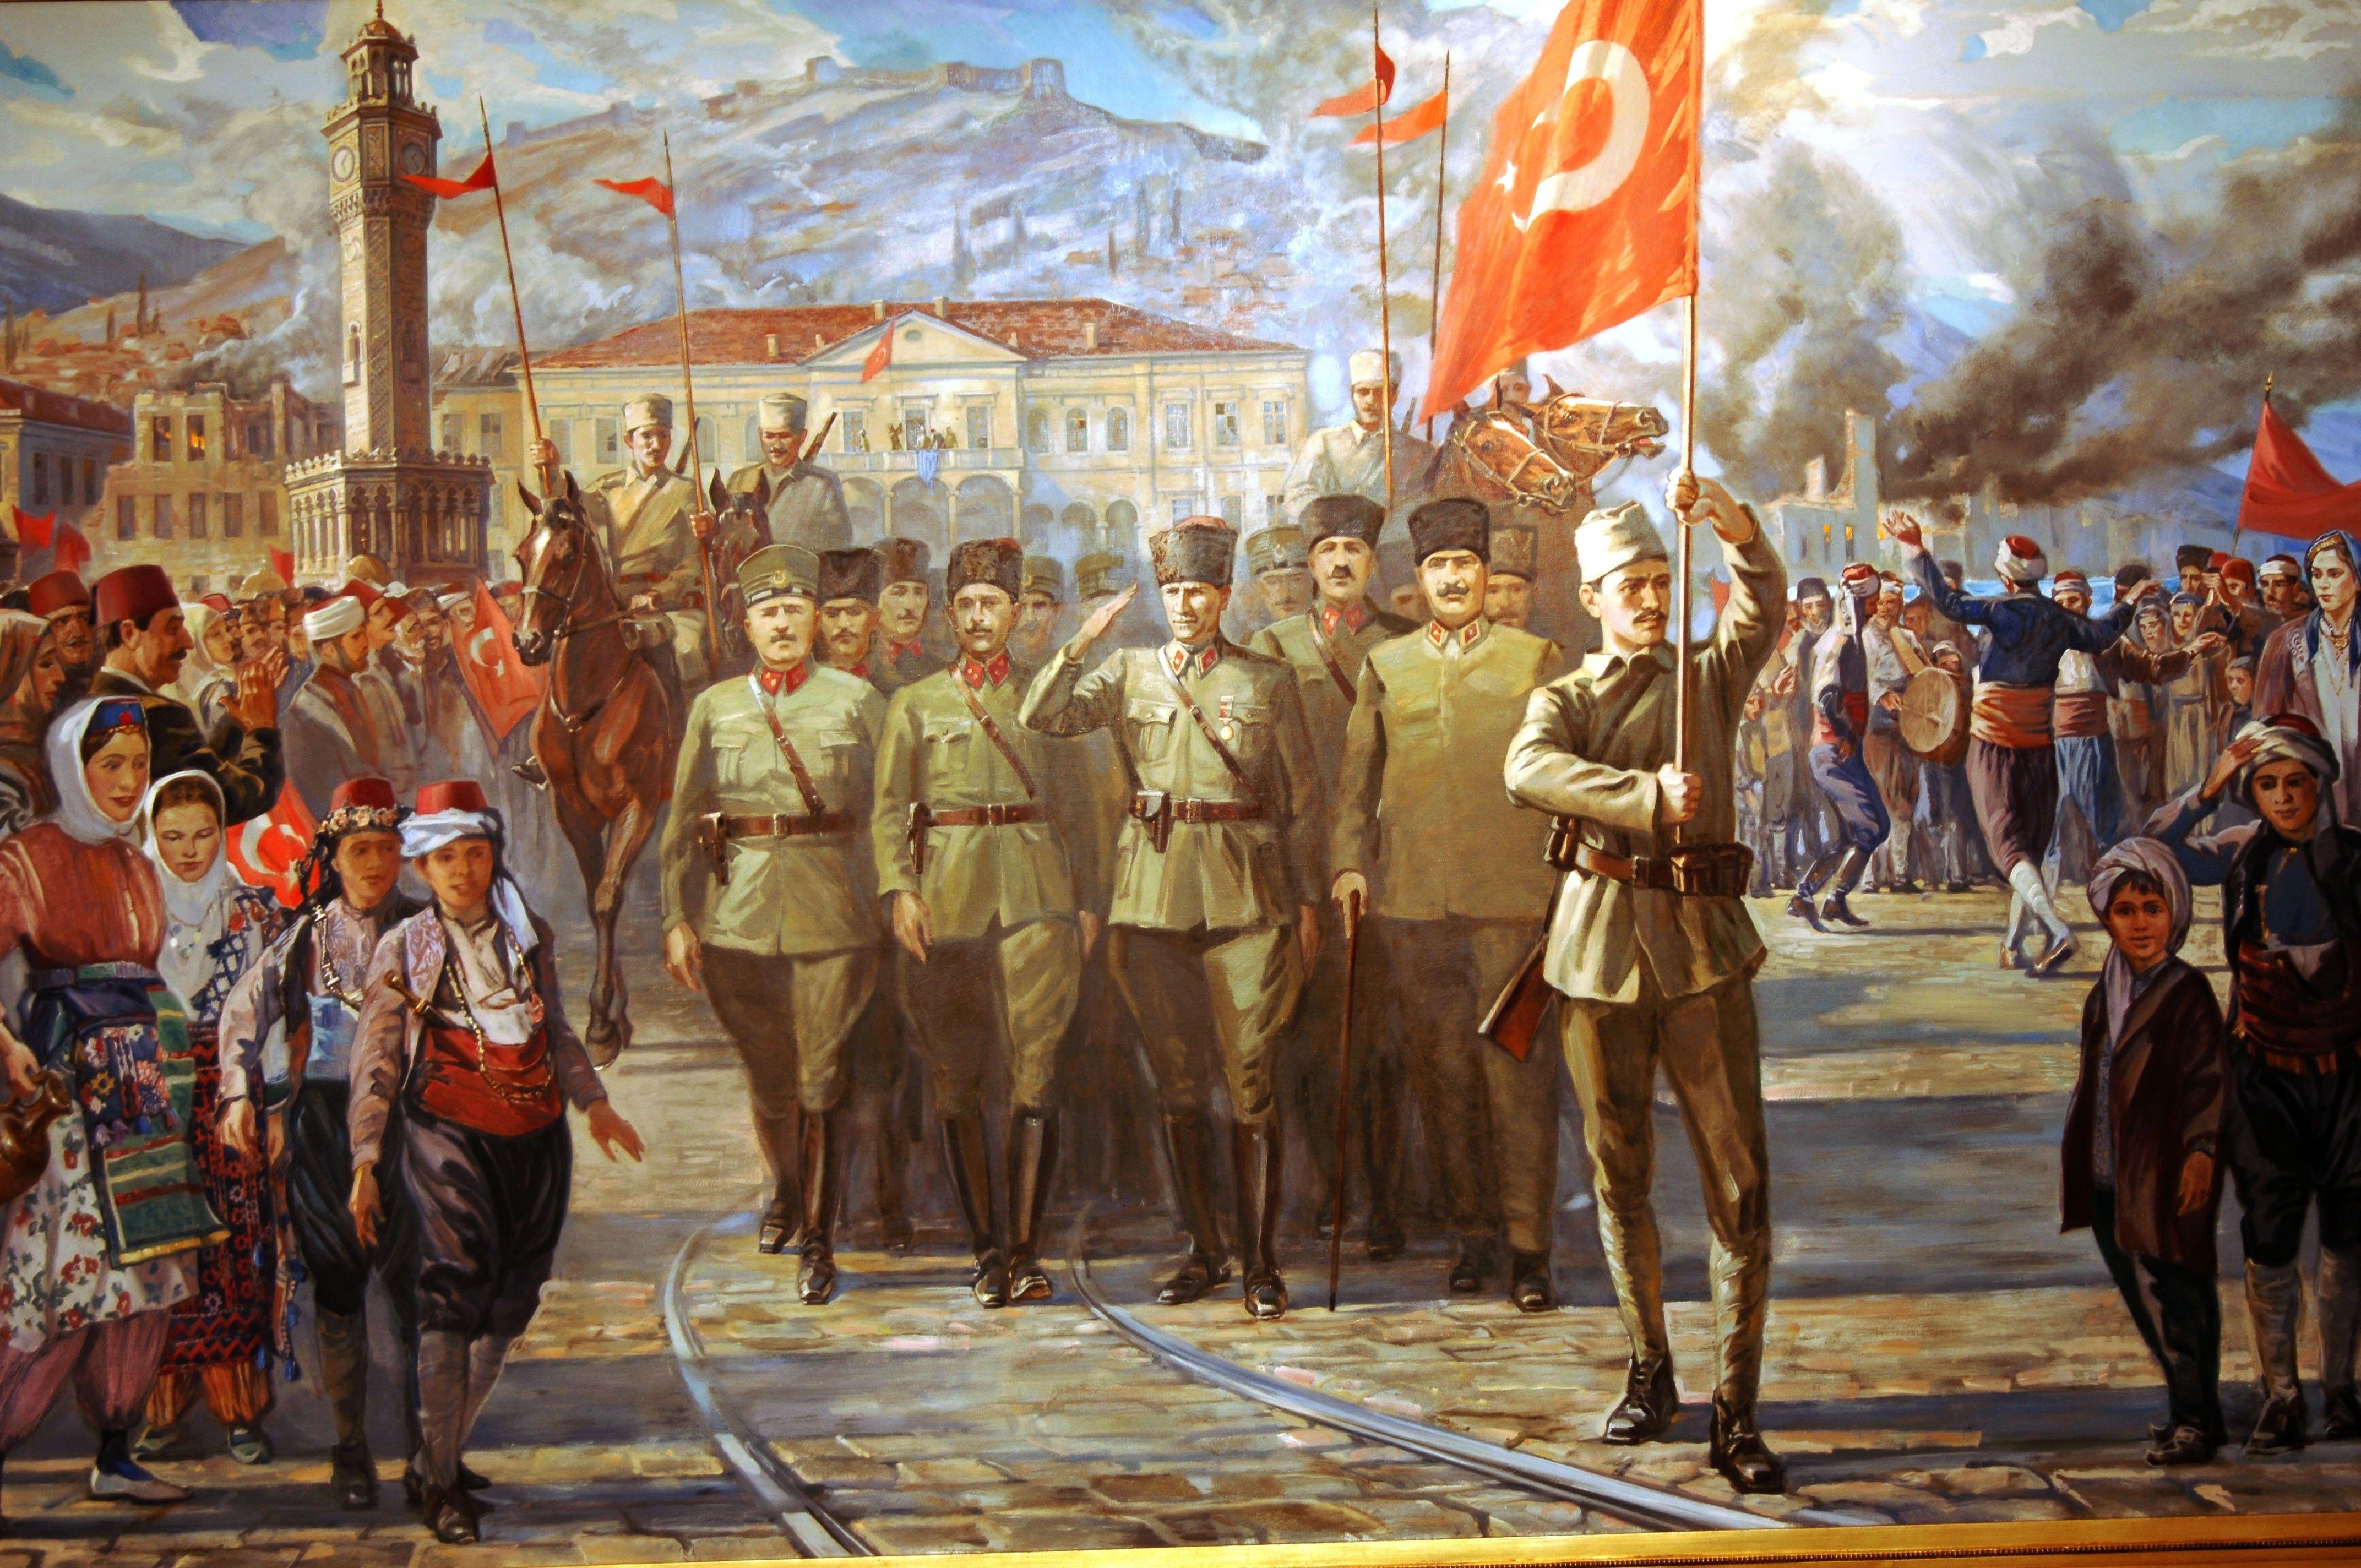 soldiers, artwork, Turkey, army, Ata, Ataturk, Turk, Turkish flag, Turks wallpaper